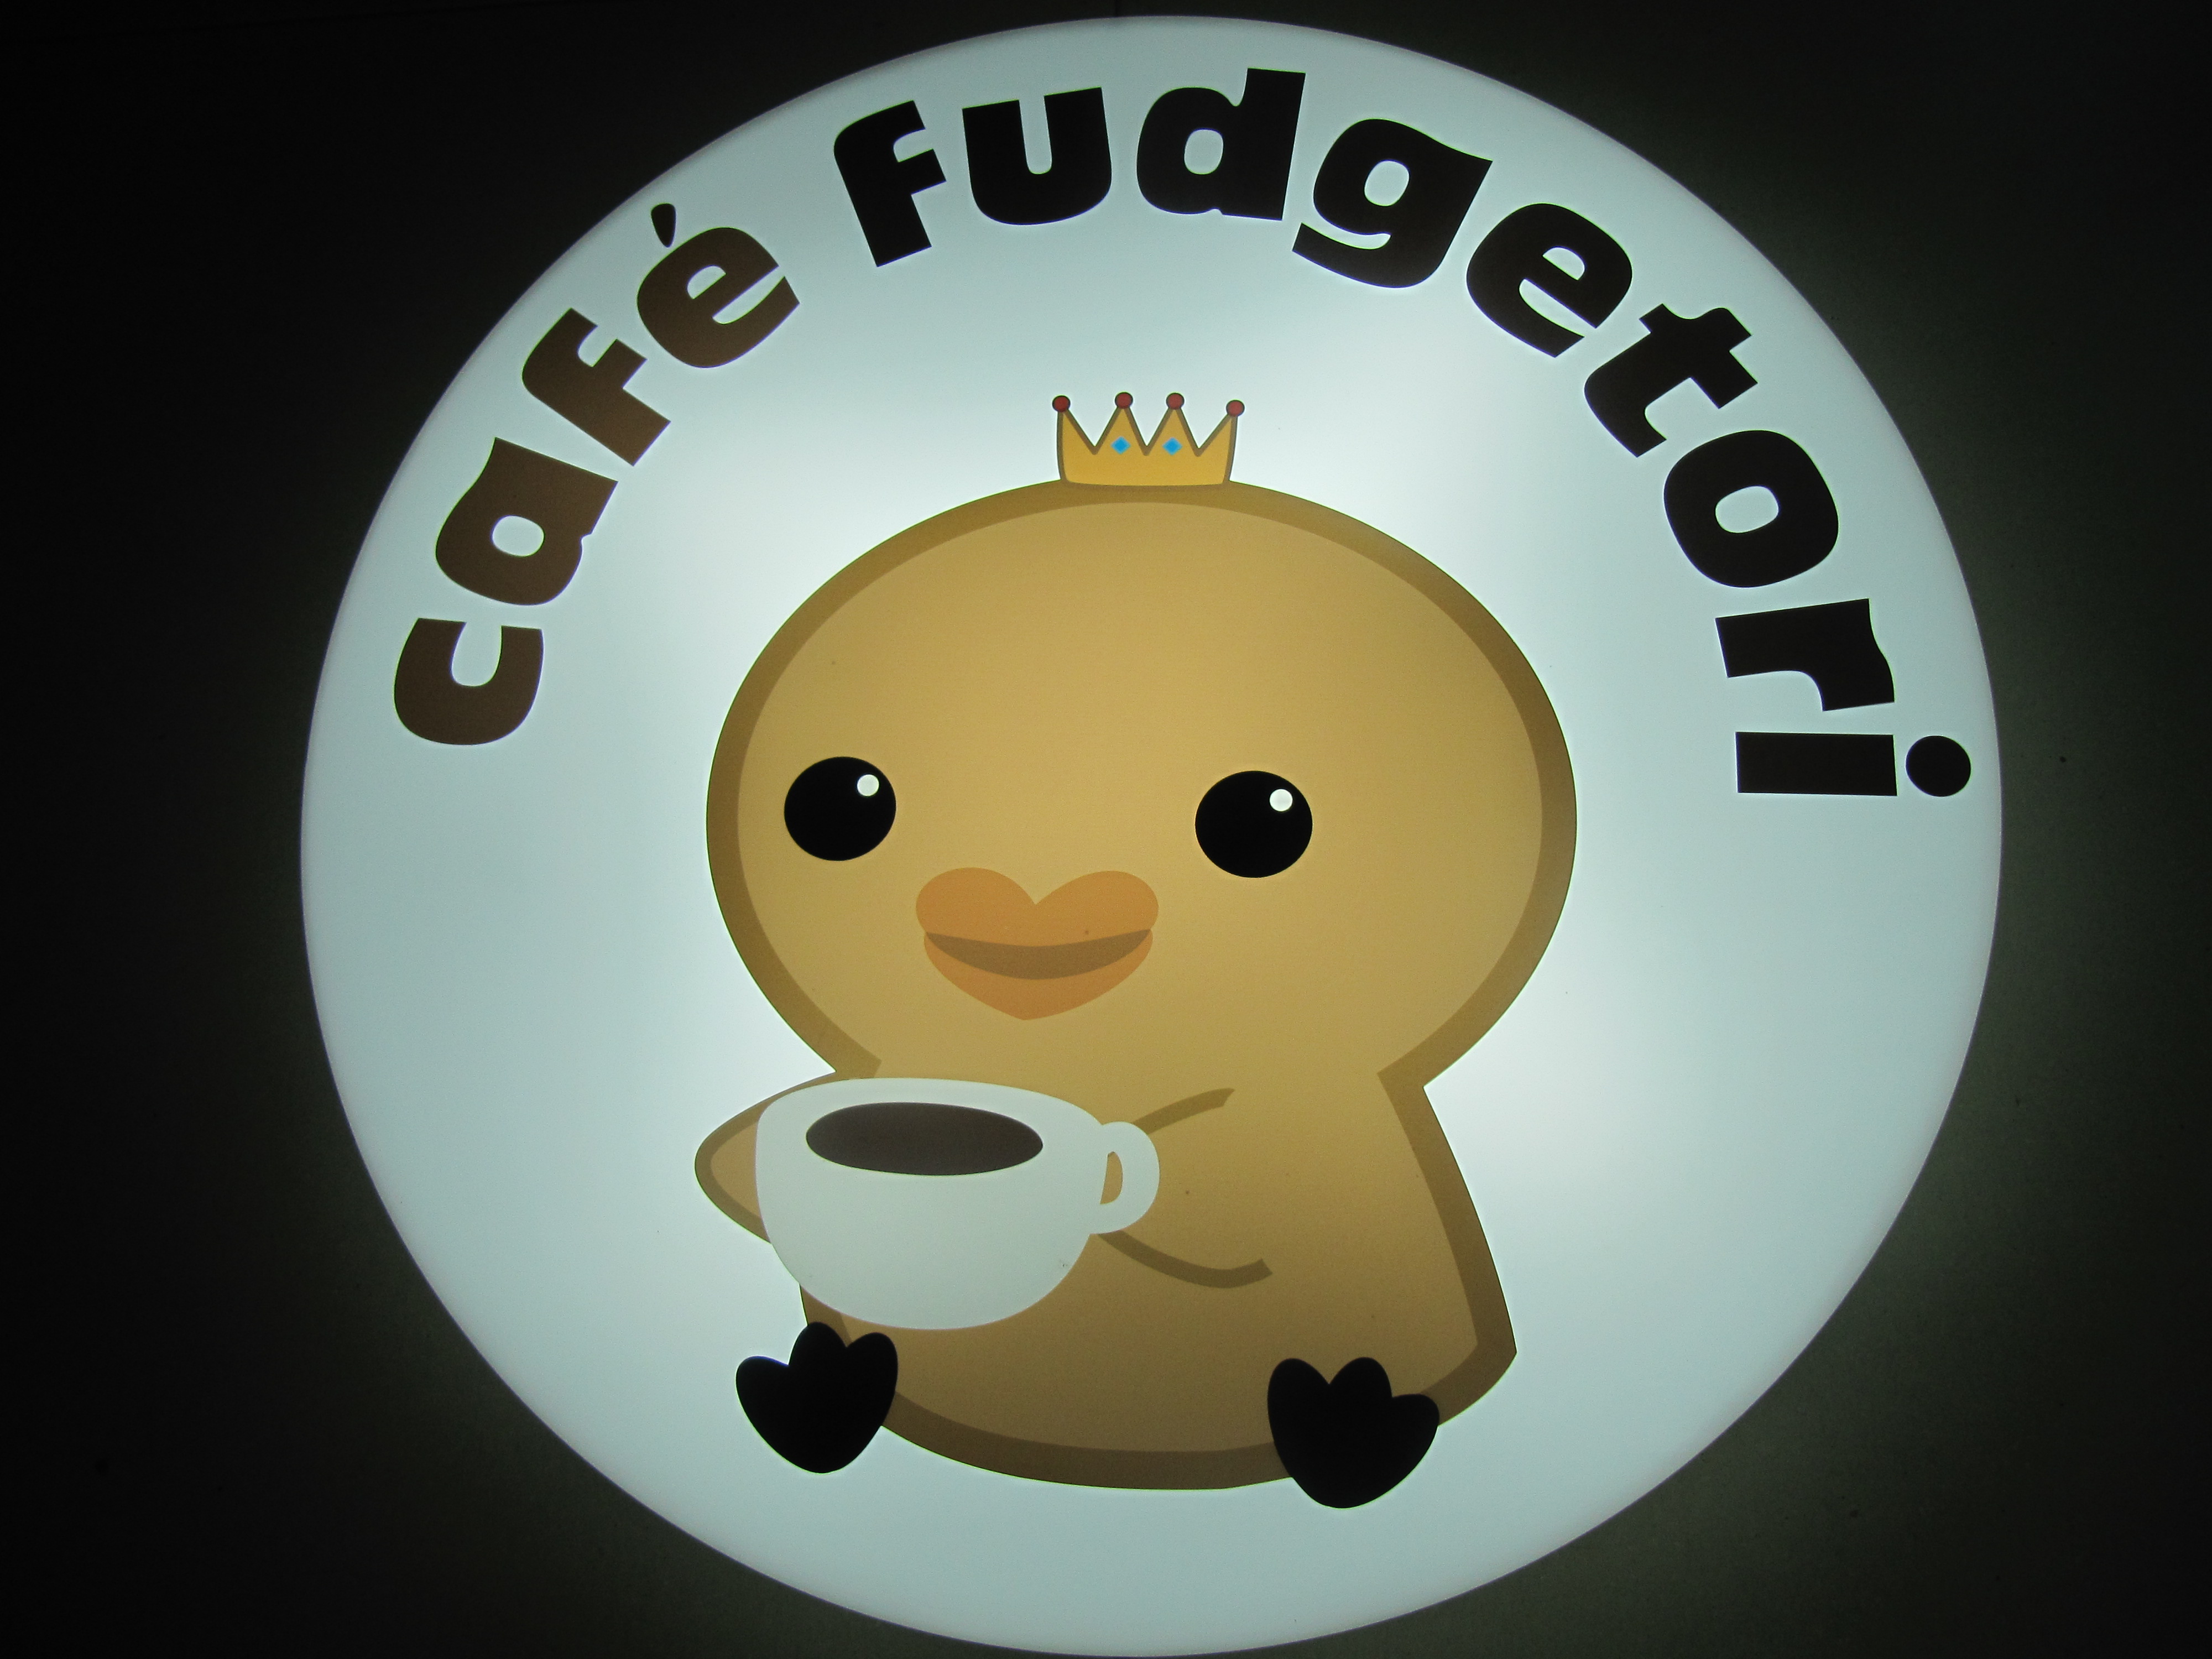 Fudgetori Cafe